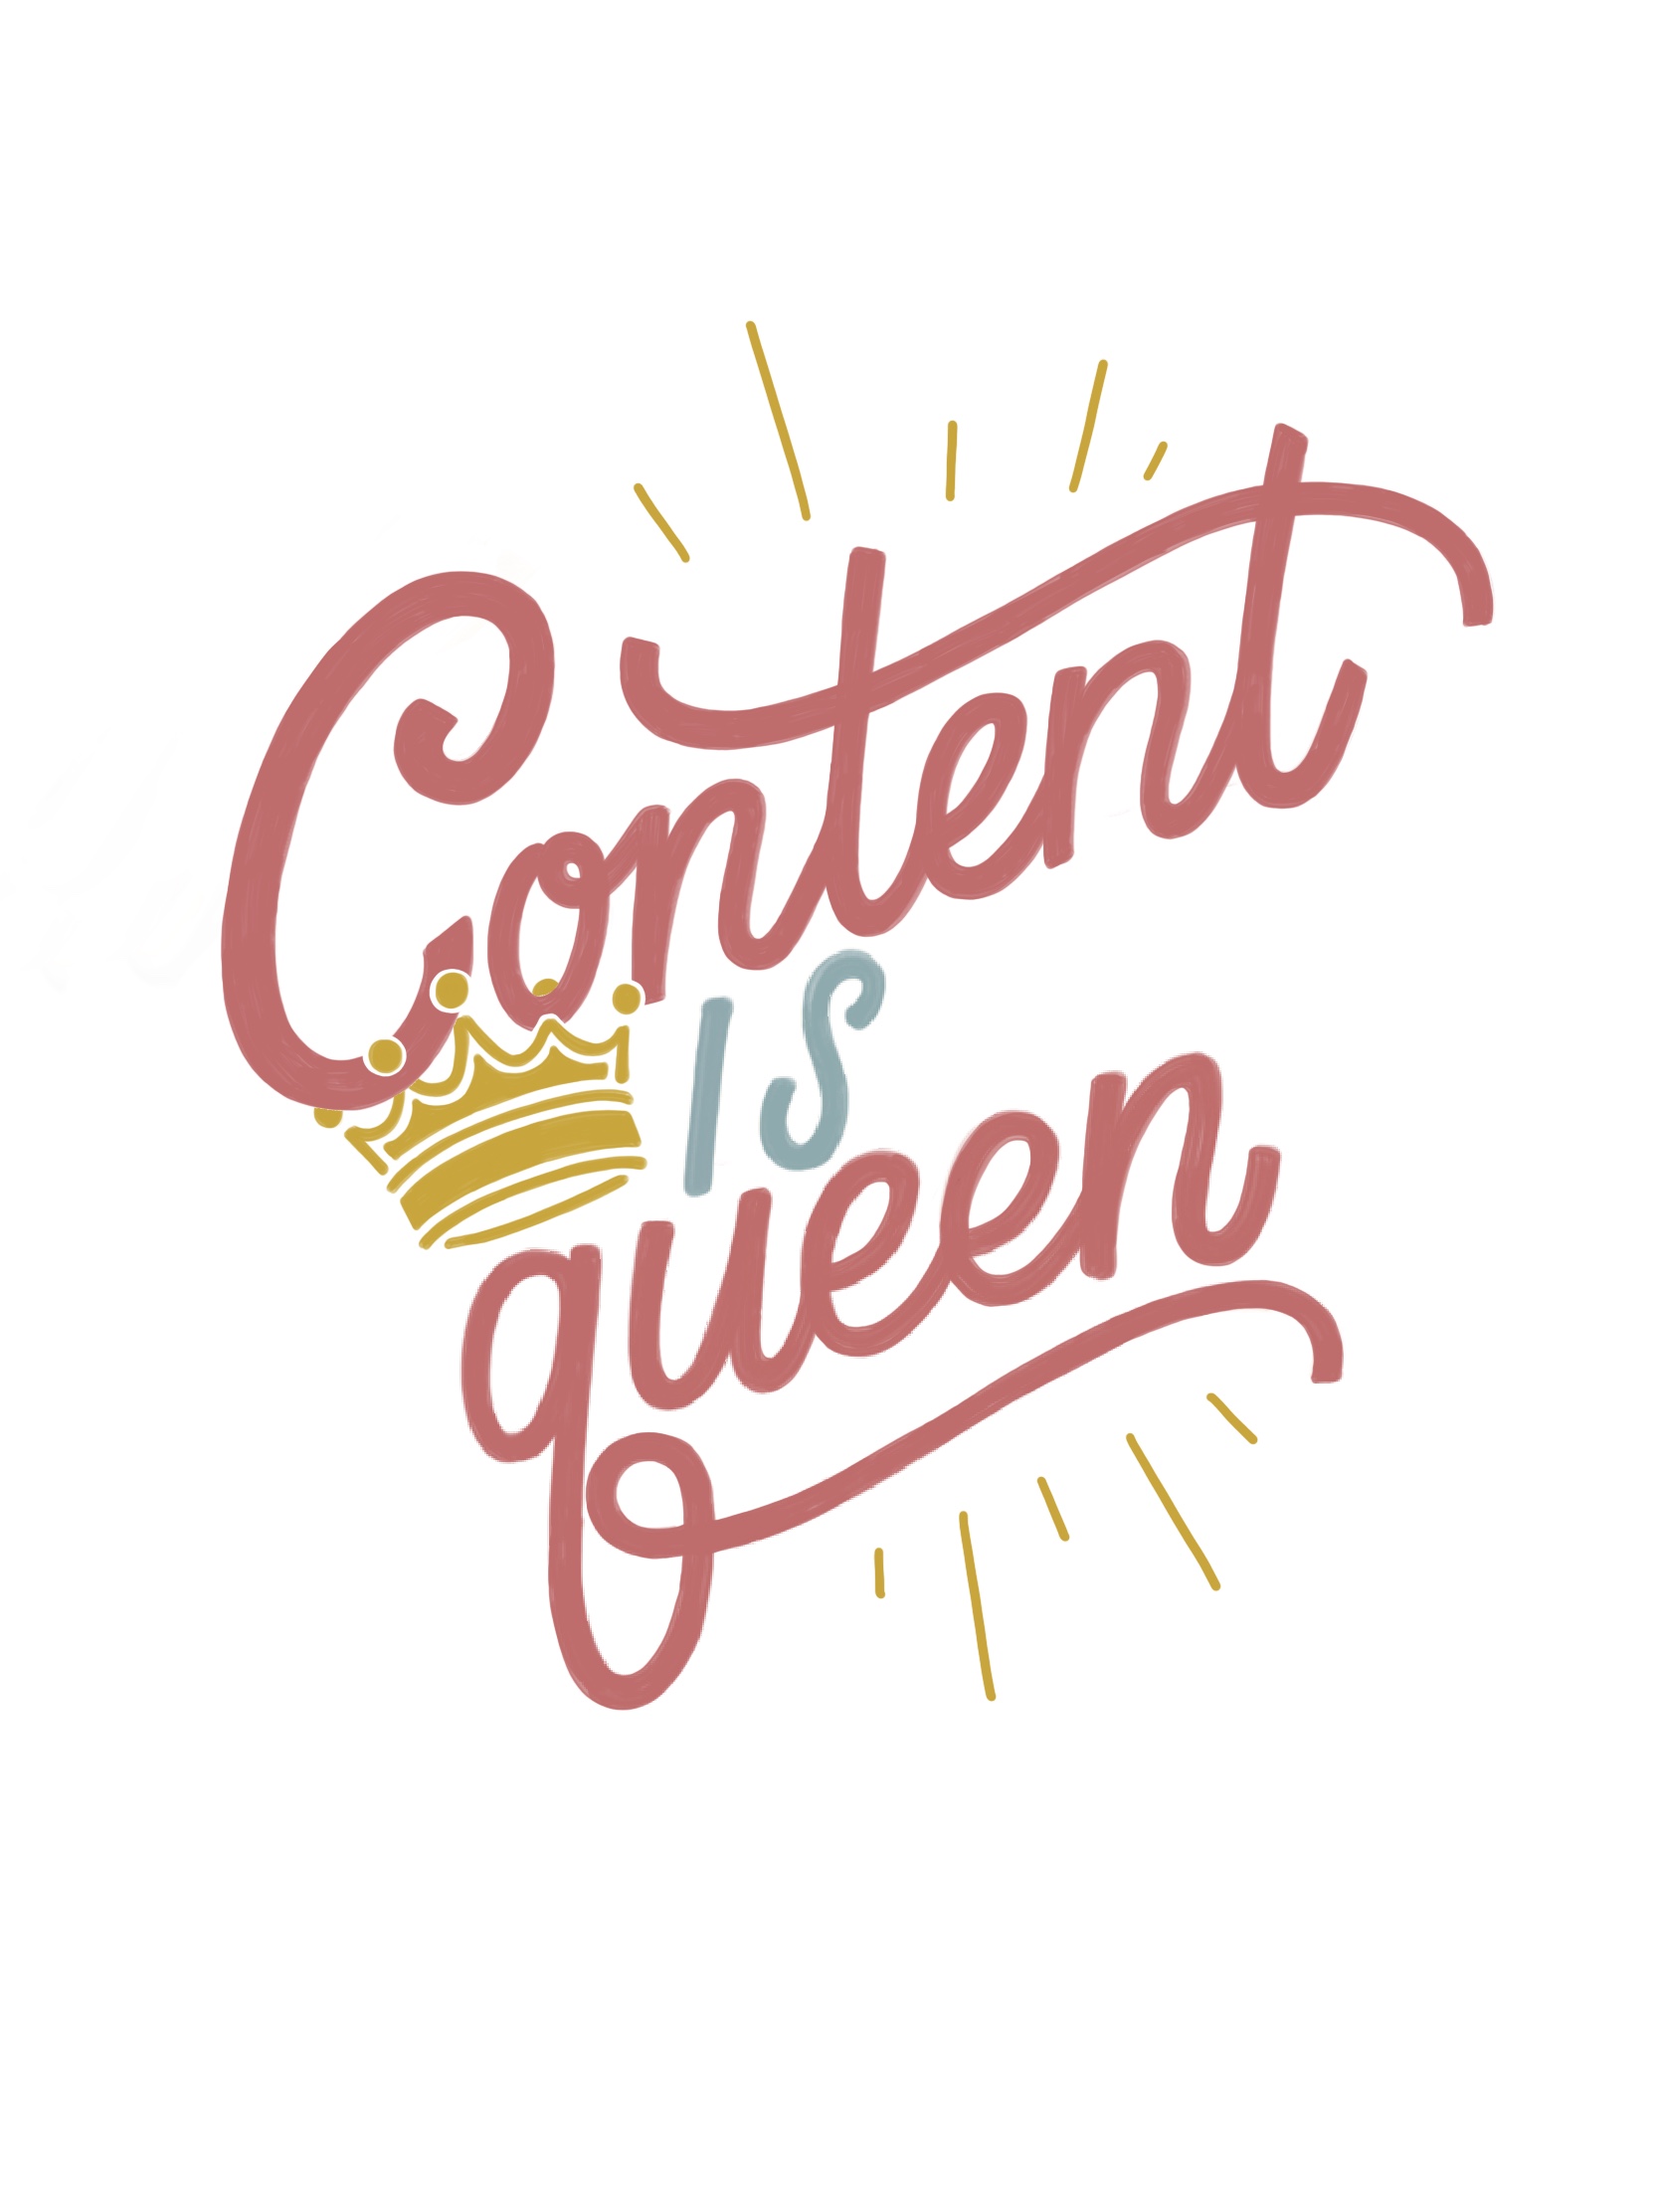 Content Is Queen Marketing